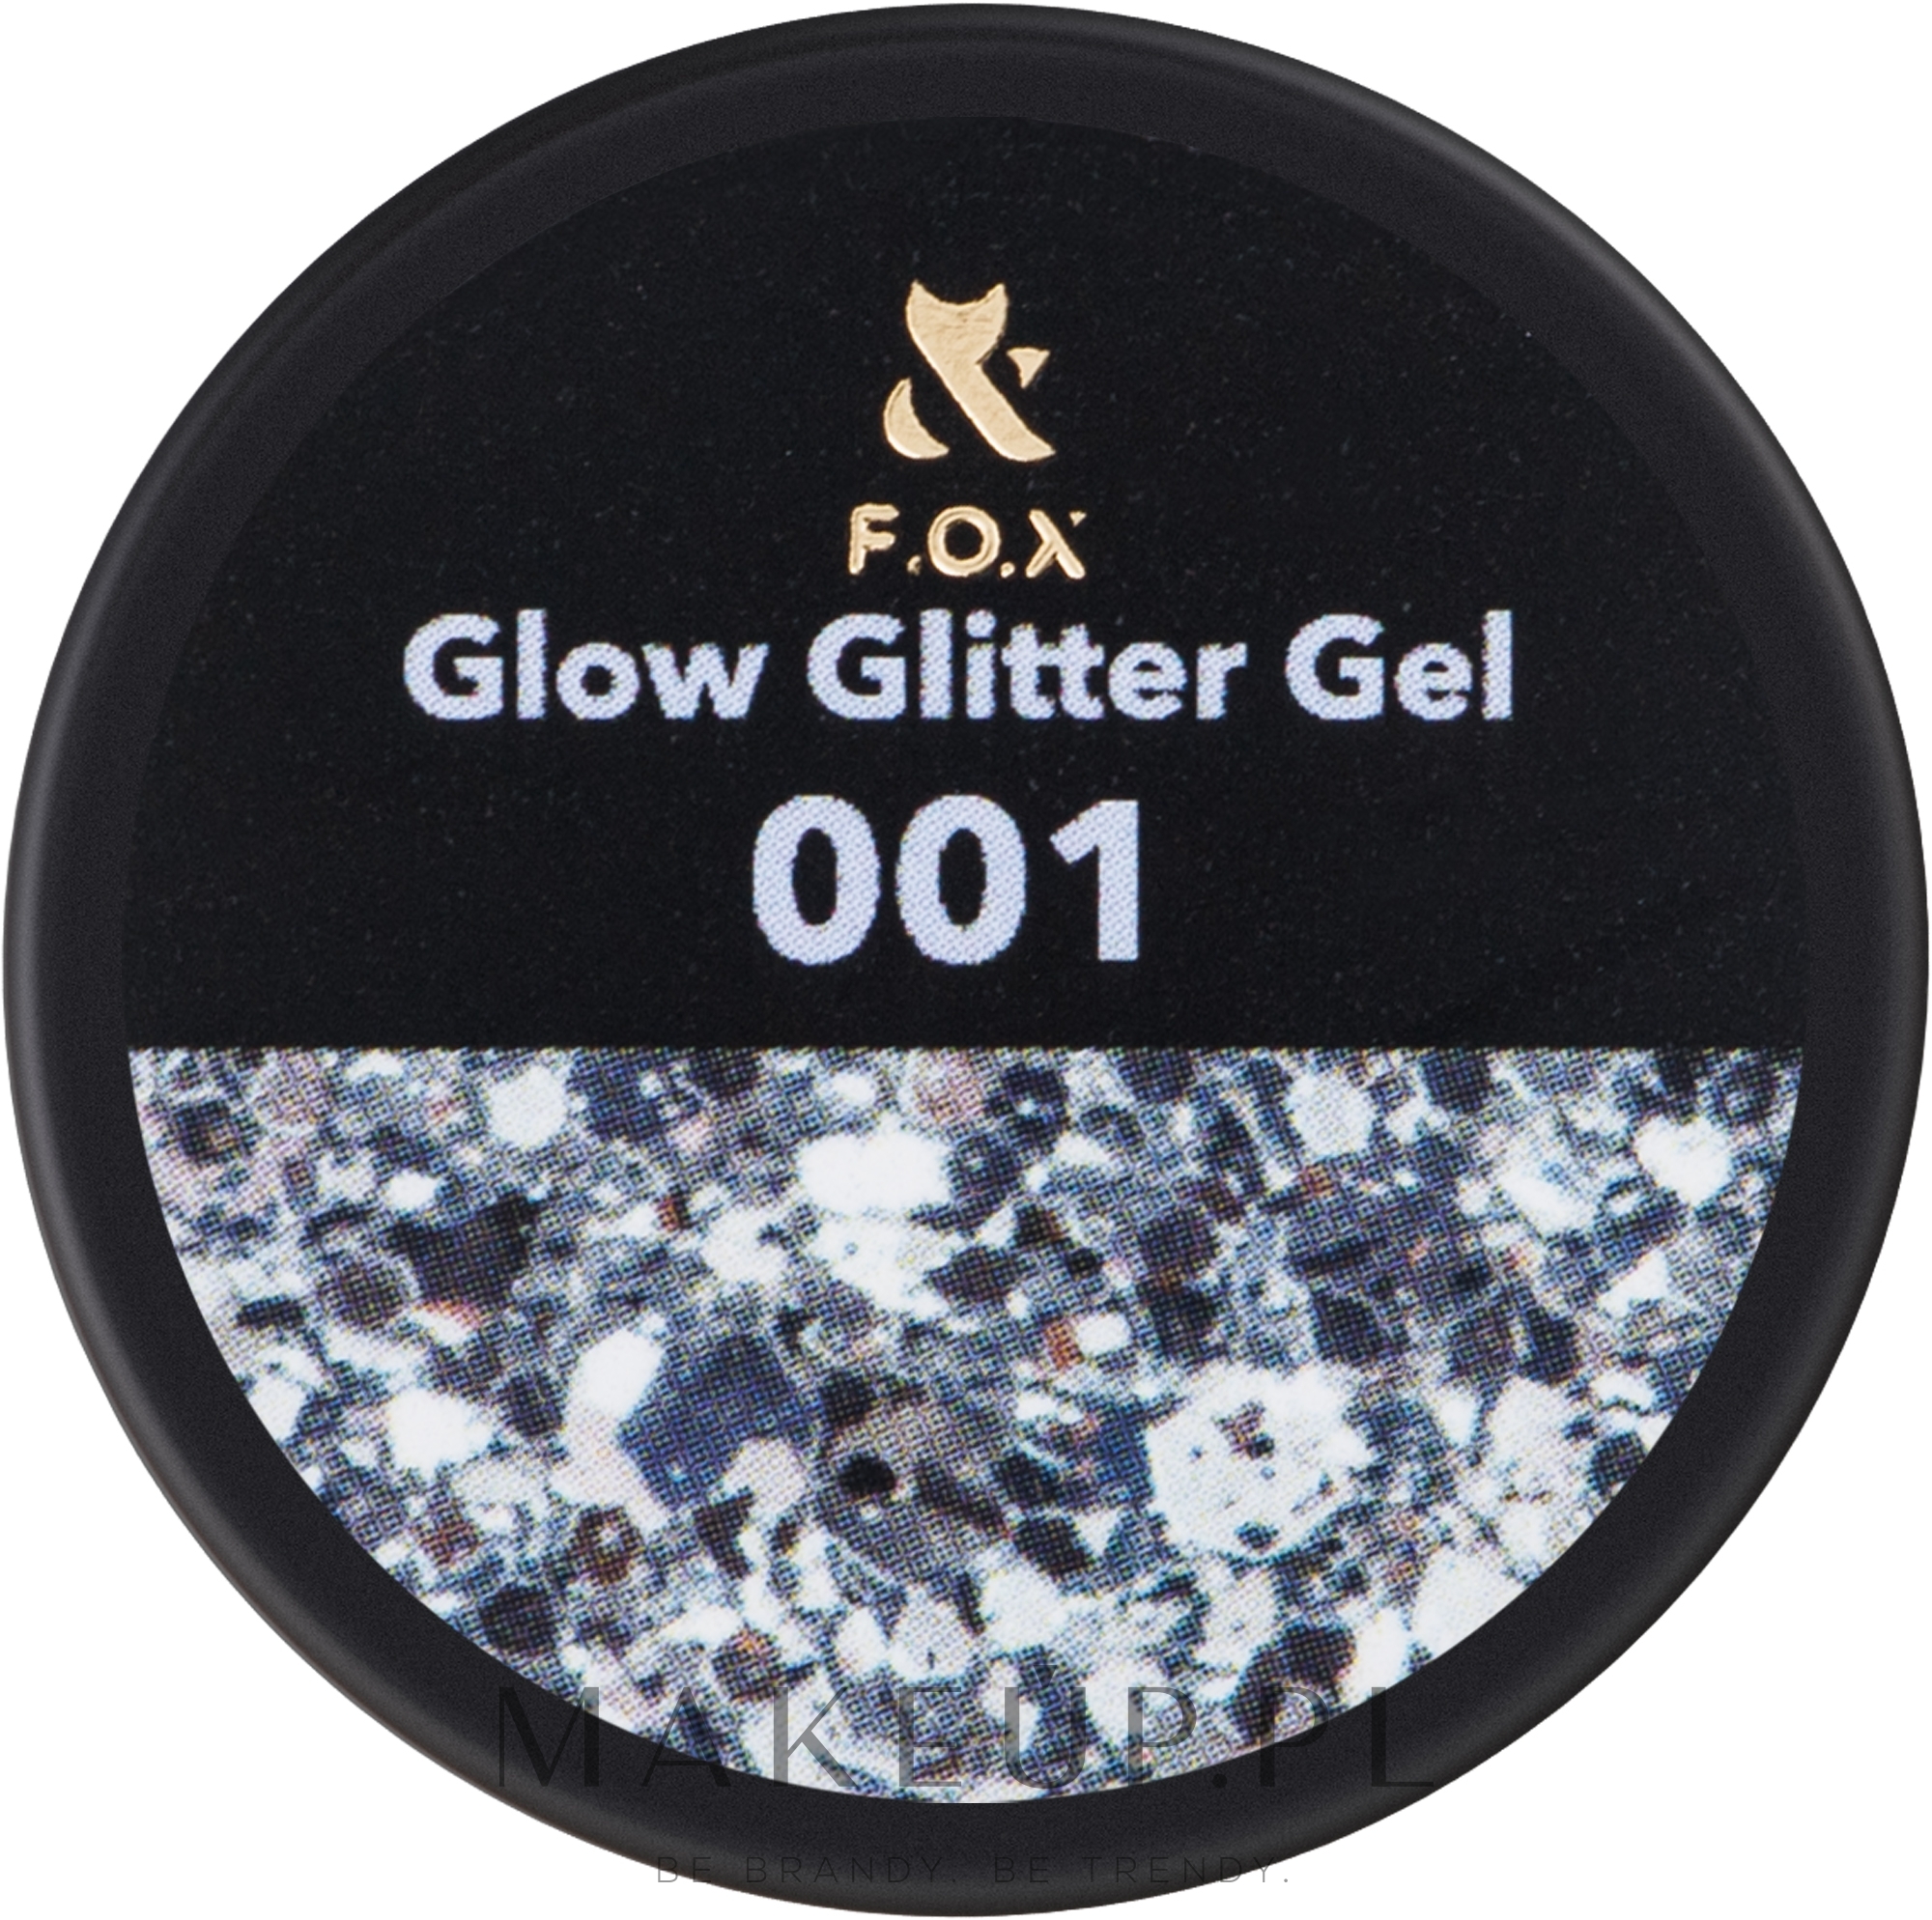 Żelowy lakier do zdobień - F.O.X Glow Glitter Gel — Zdjęcie 001